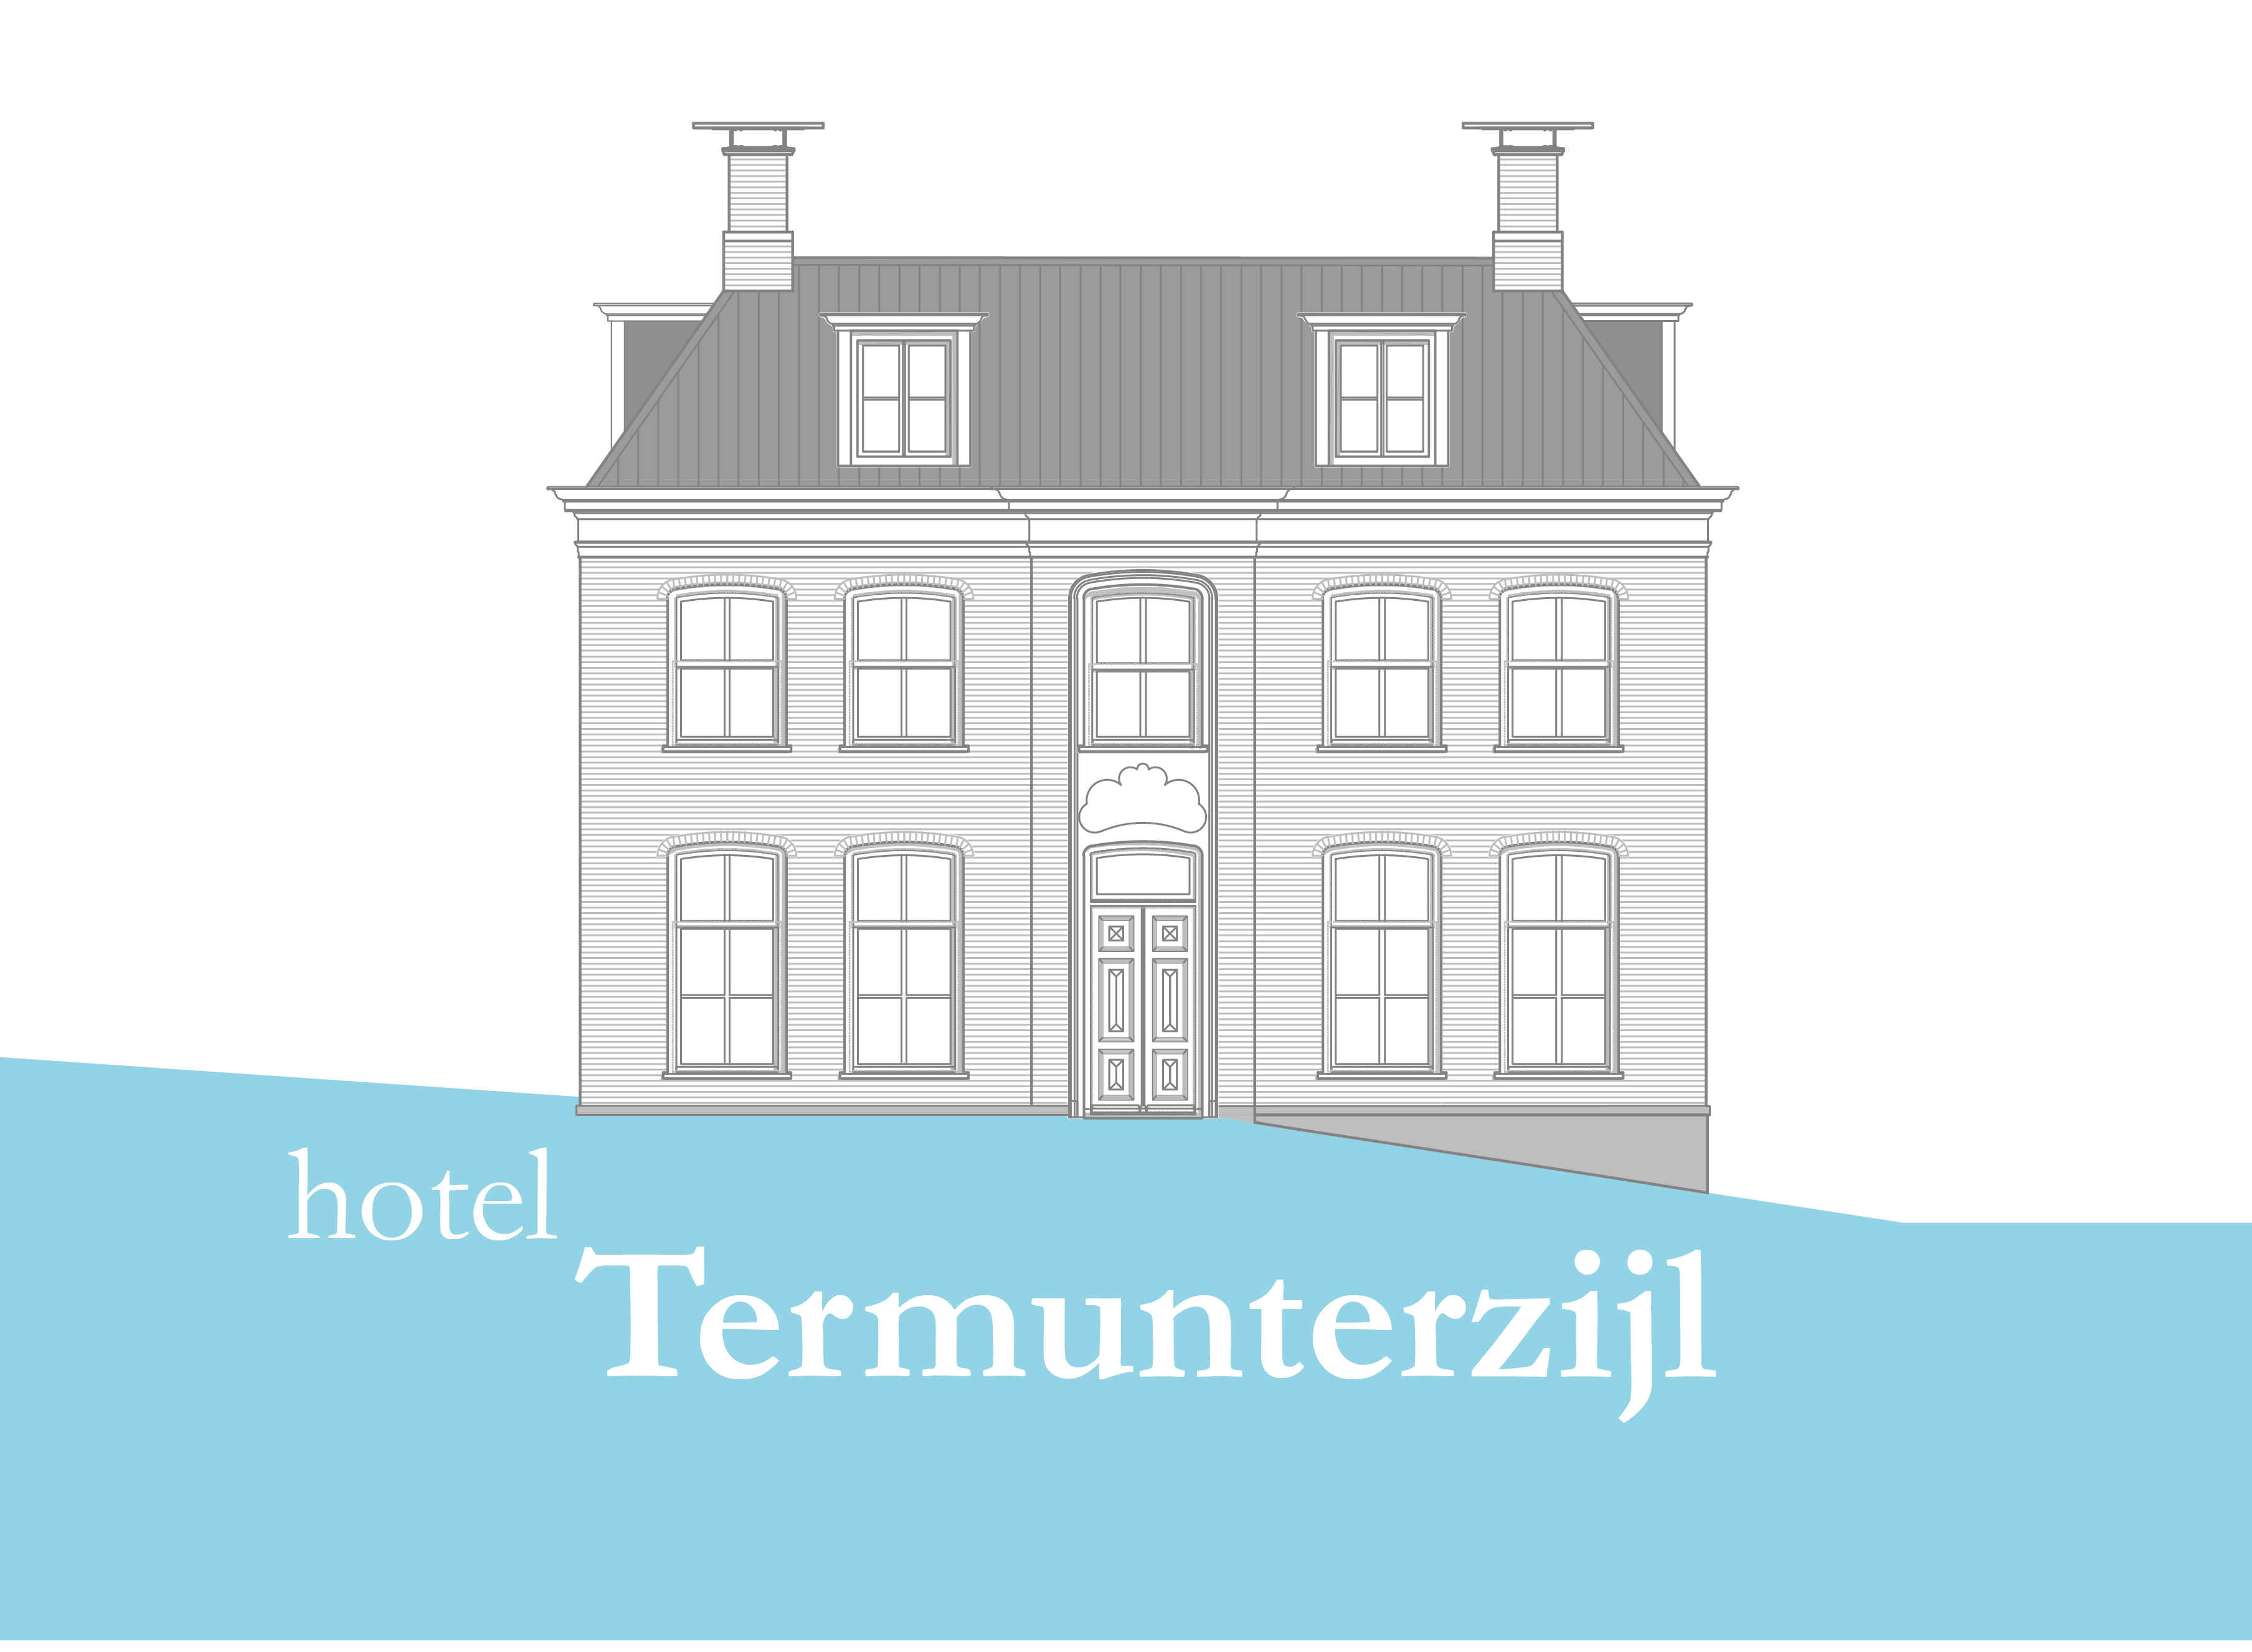 Hotel Termunterzijl - logo